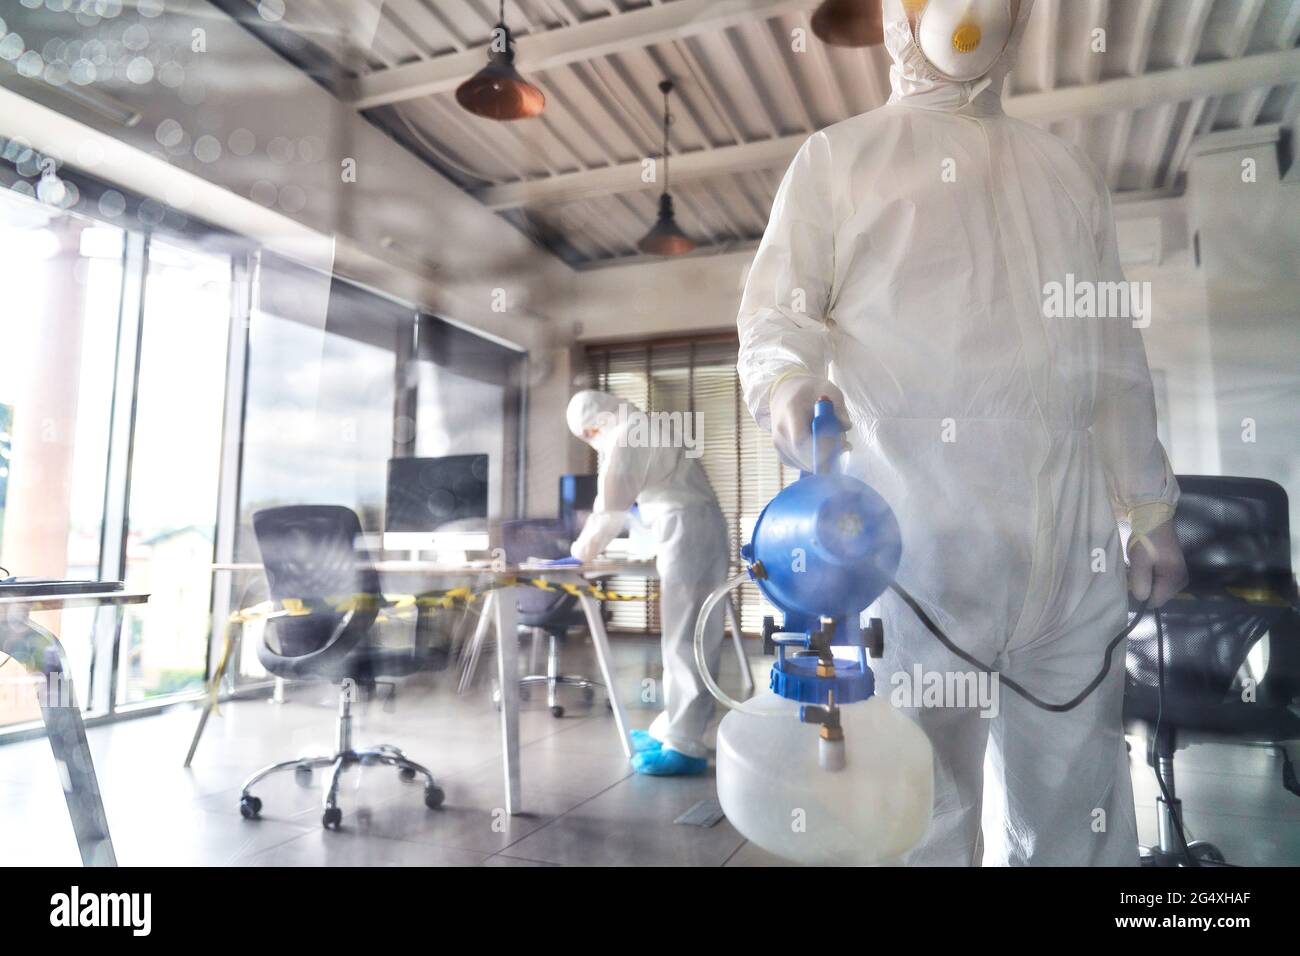 Sanitäter mit Reinigungsausrüstung im Büro Stockfoto